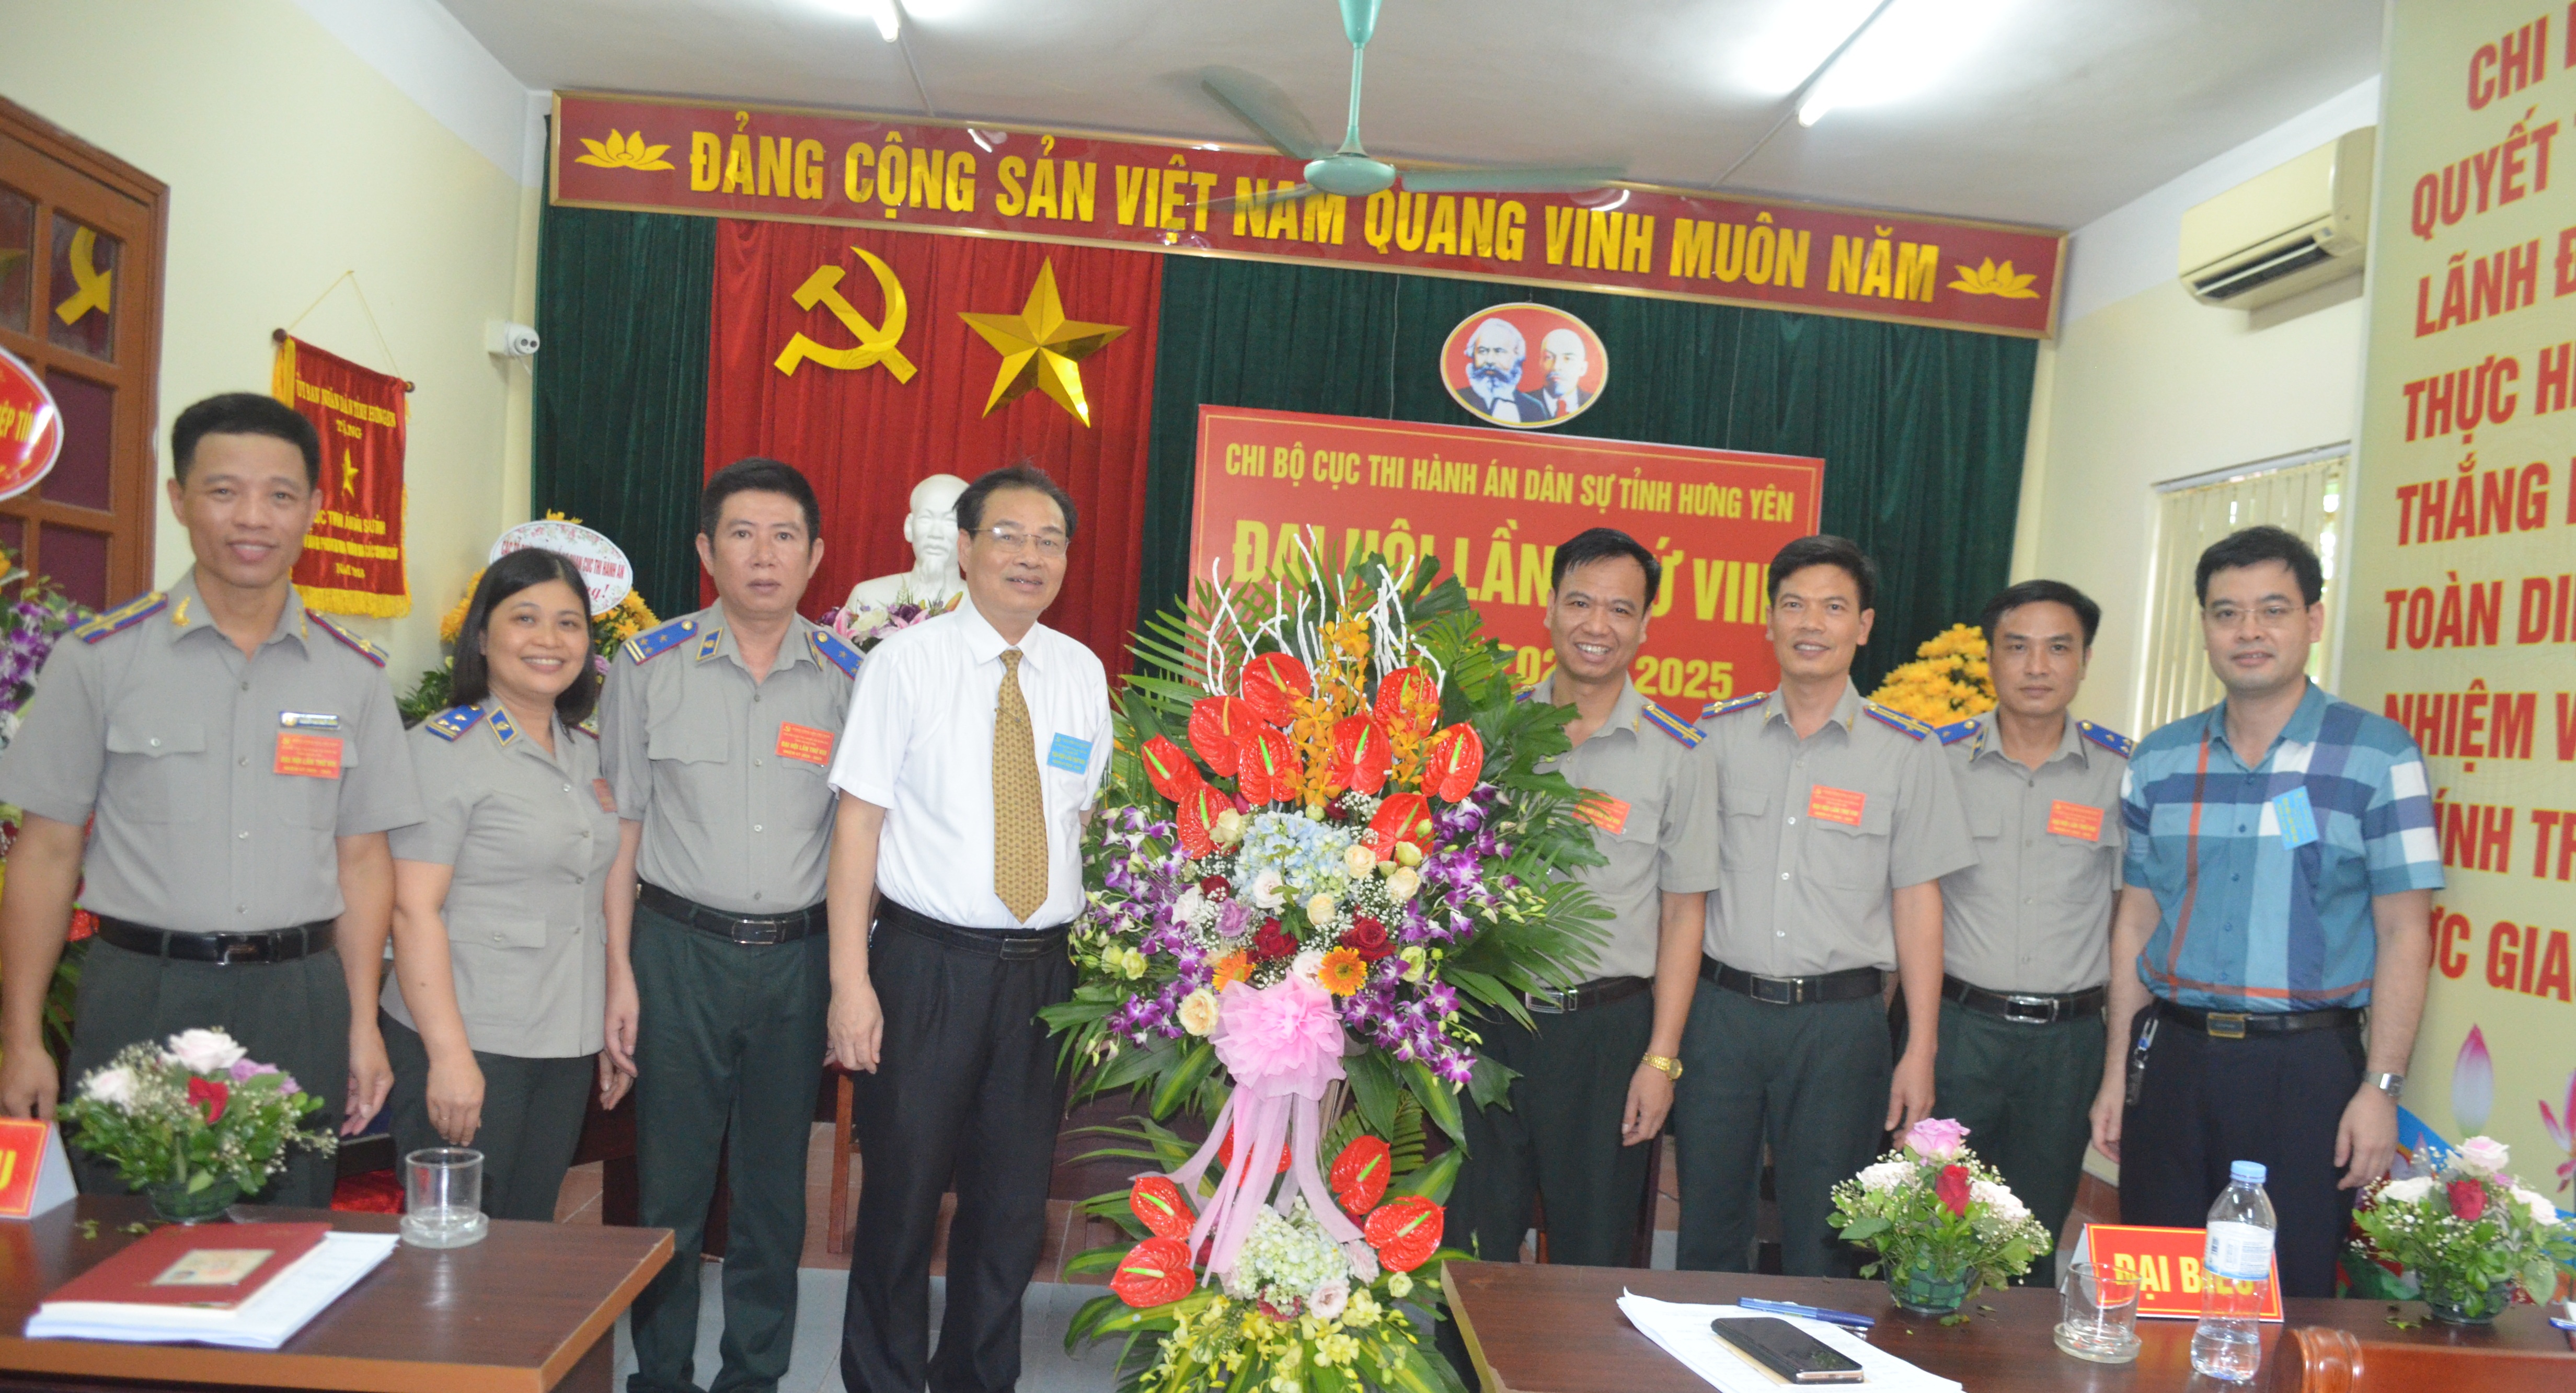 Chi bộ Cục Thi hành án dân sự tỉnh Hưng Yên tổ chức thành công Đại hội Chi bộ lần thứ VIII, nhiệm kỳ 2020-2025